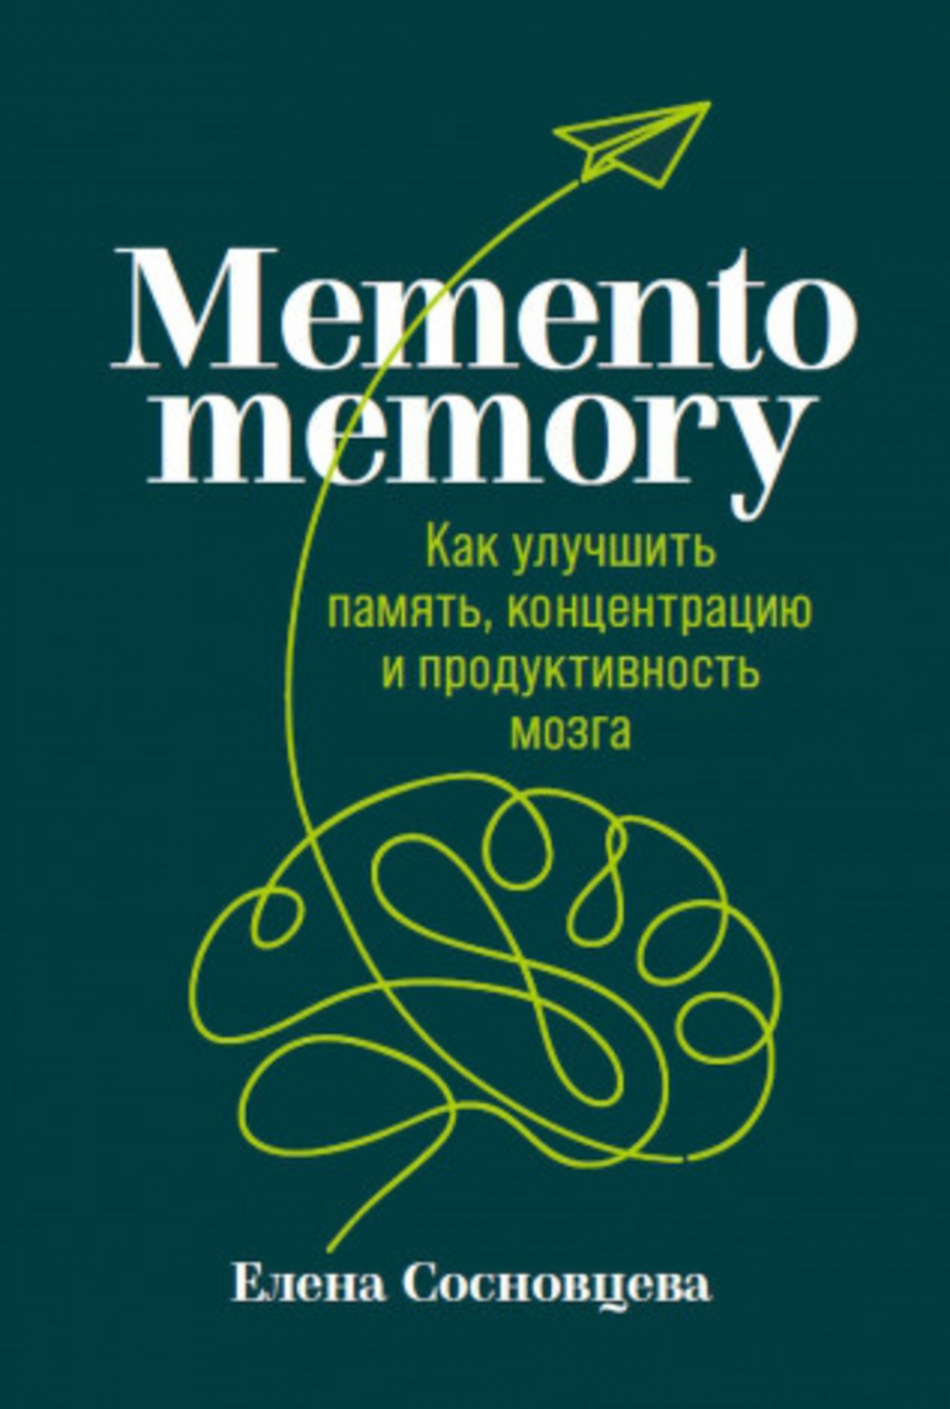  .. Memento memory 